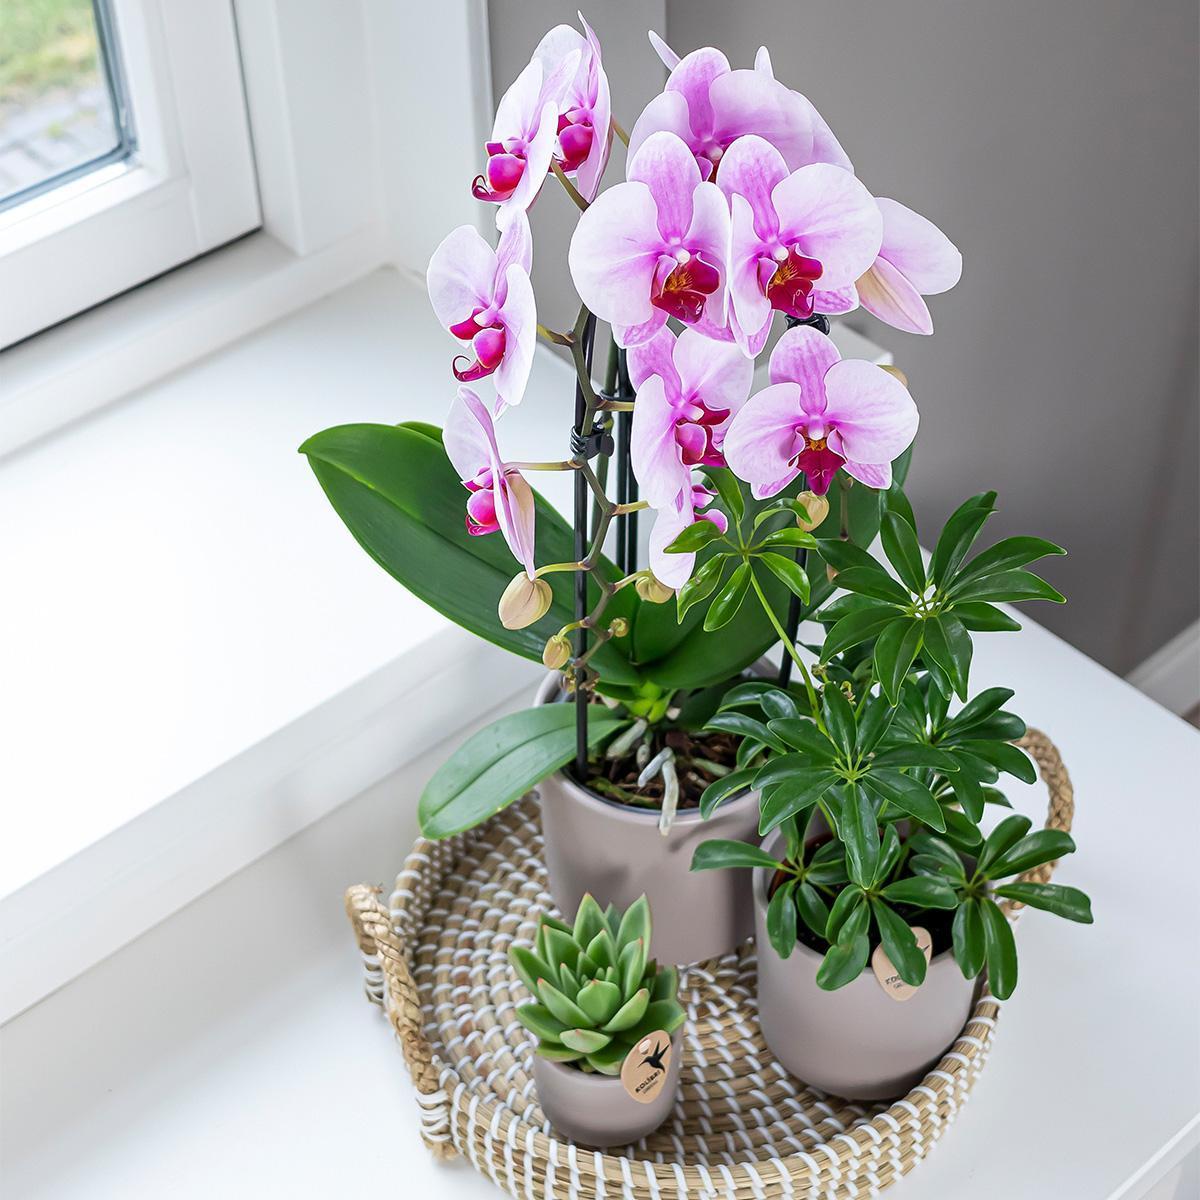 Kolibri Orchids | rosa Phalaenopsis Orchidee - Niagara Fall - Topfgröße Ø12cm | blühende Zimmerpflanze - frisch vom Züchter-Plant-Botanicly